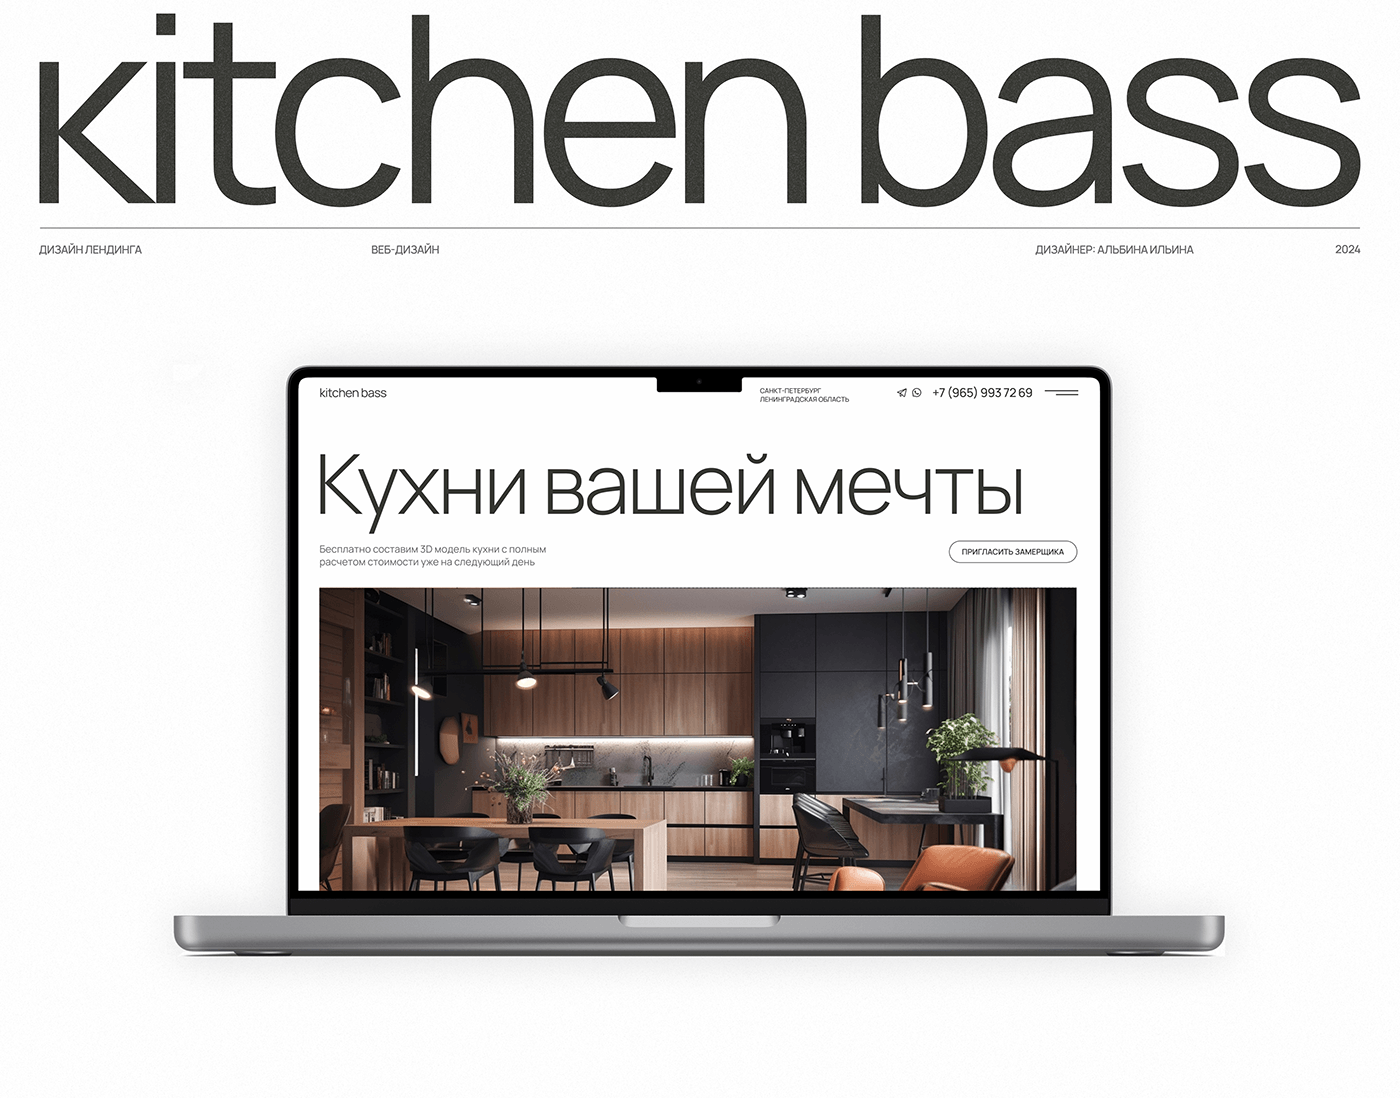 лендинг веб-дизайн дизайн сайта сайт сайт кухни kitchen дизайн сайта кухни кухни landing кухни на заказ лендинг кухни